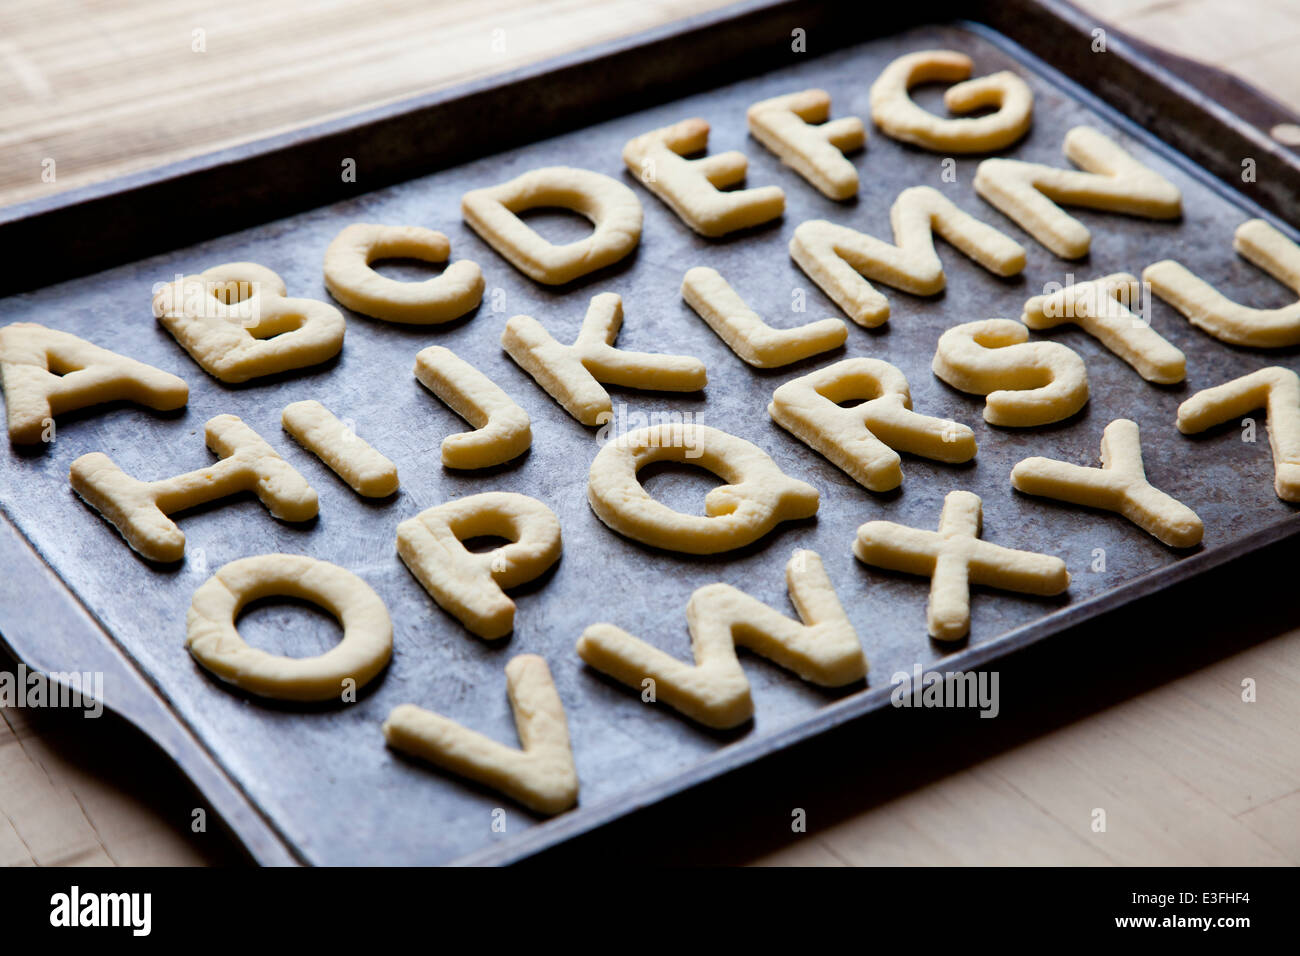 En forme de lettre Alphabet cookies sur la plaque de cuisson Banque D'Images